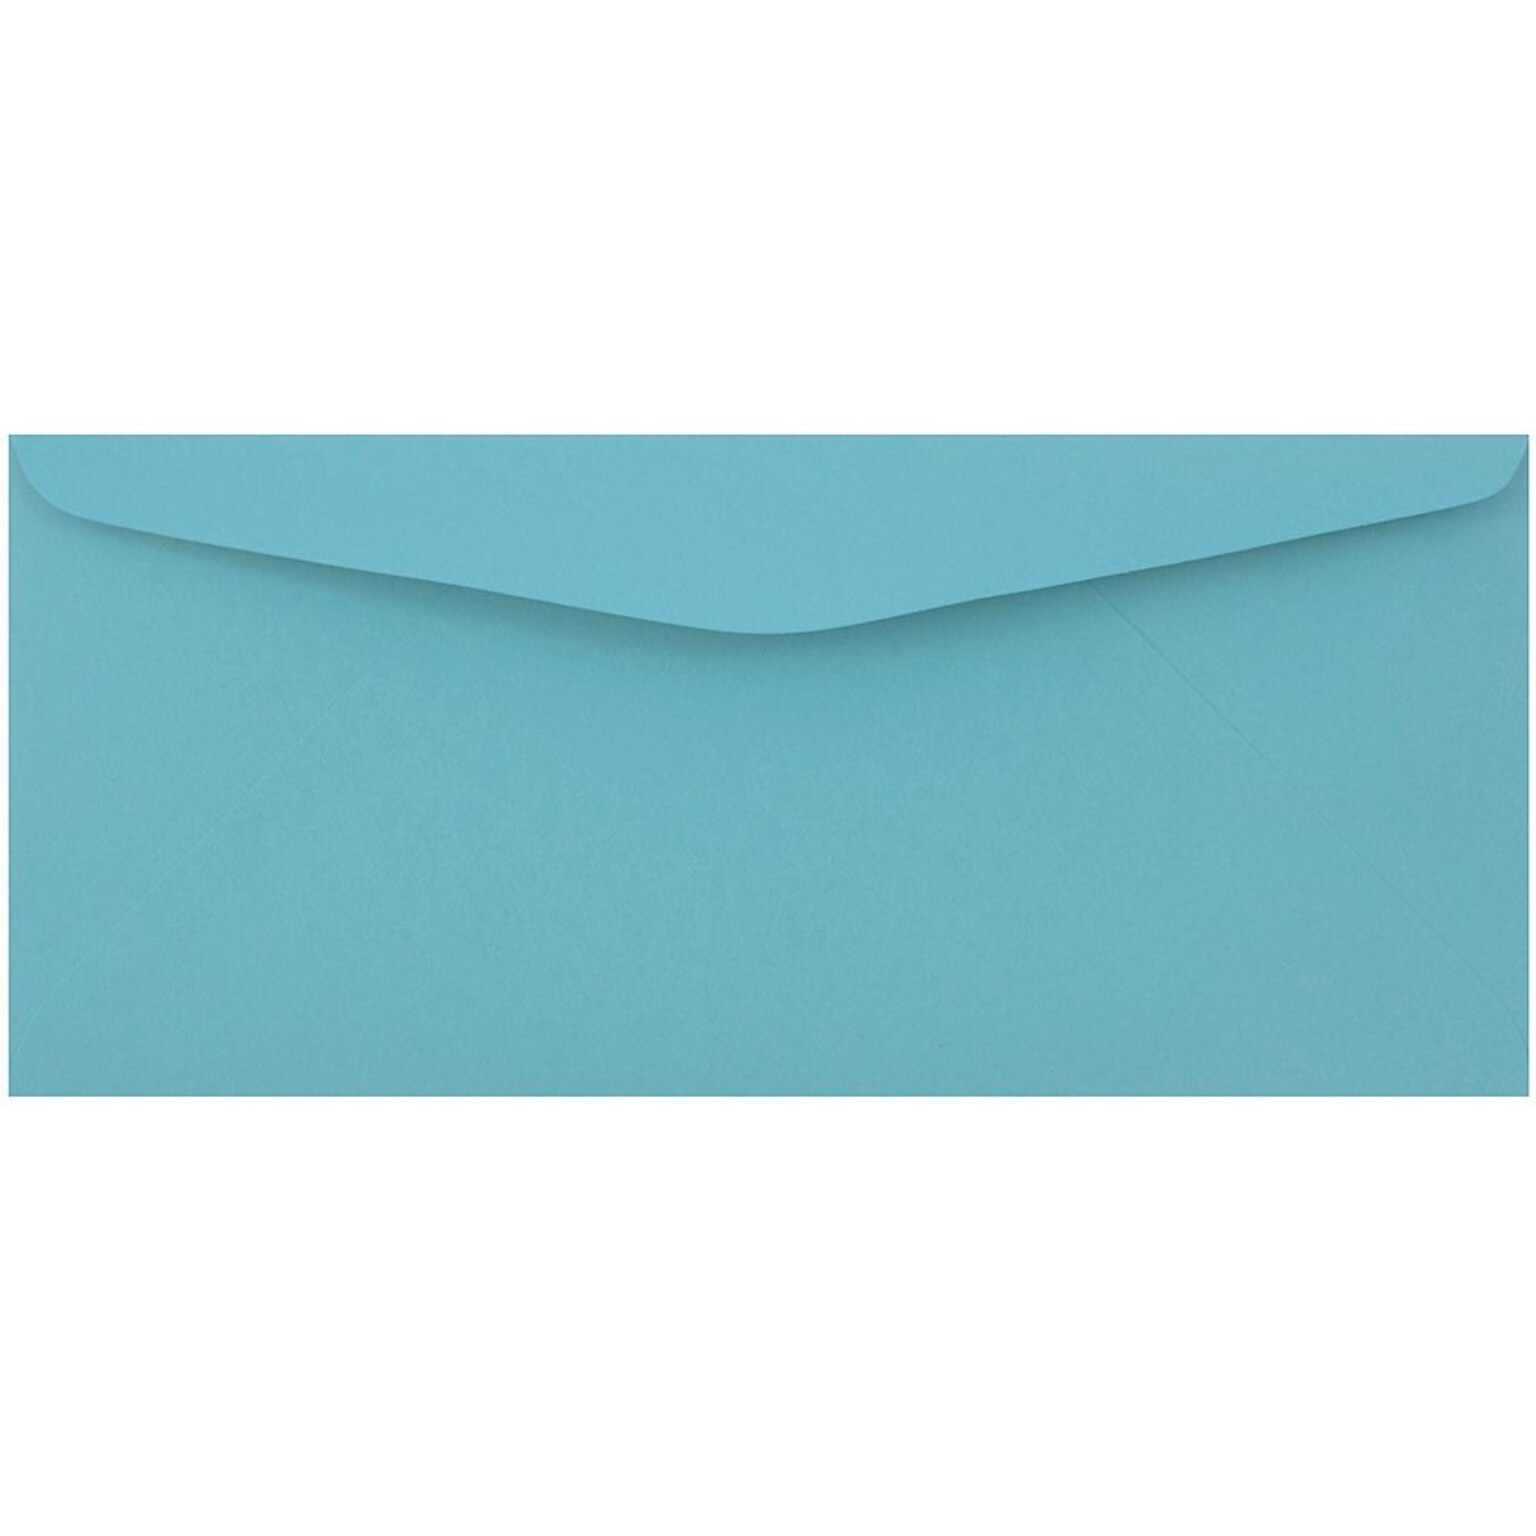 JAM Paper #9 Business Envelope, 3 7/8 x 8 7/8, Blue, 500/Box (1532897C)